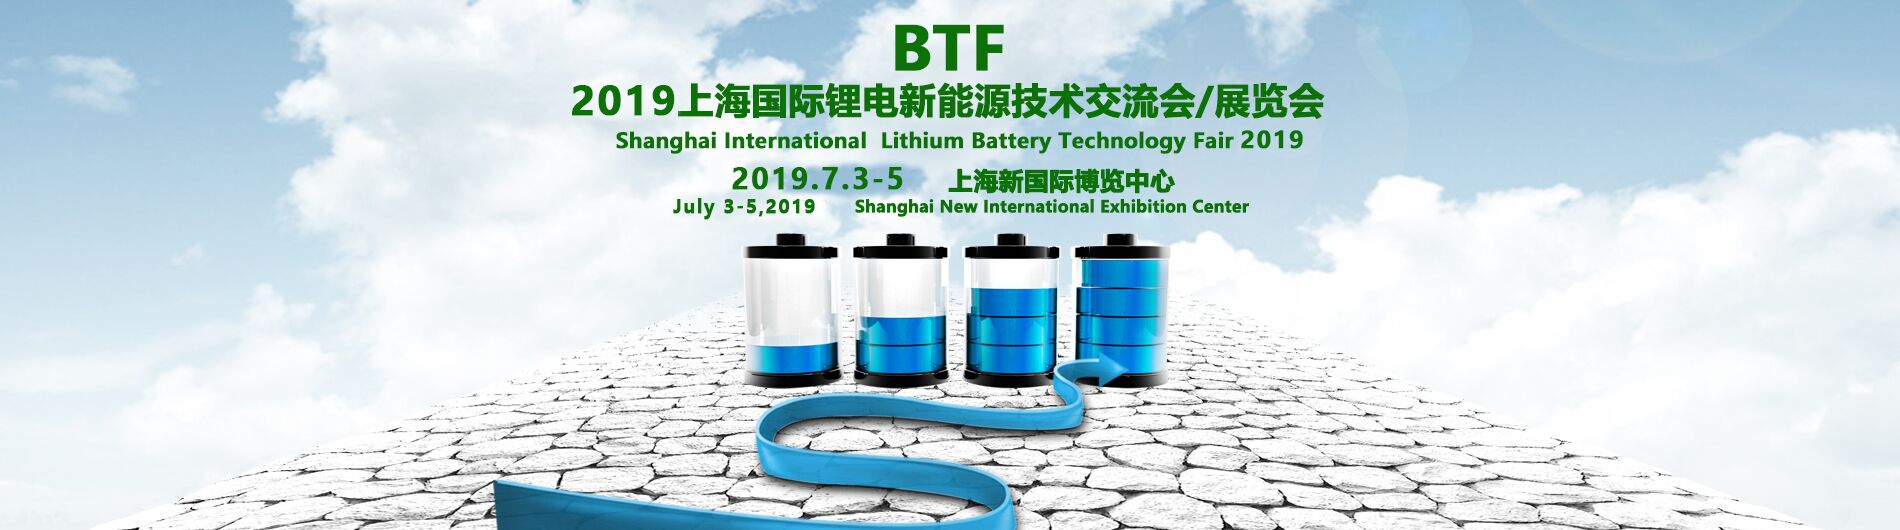 2019中国上海锂电设备及材料展会